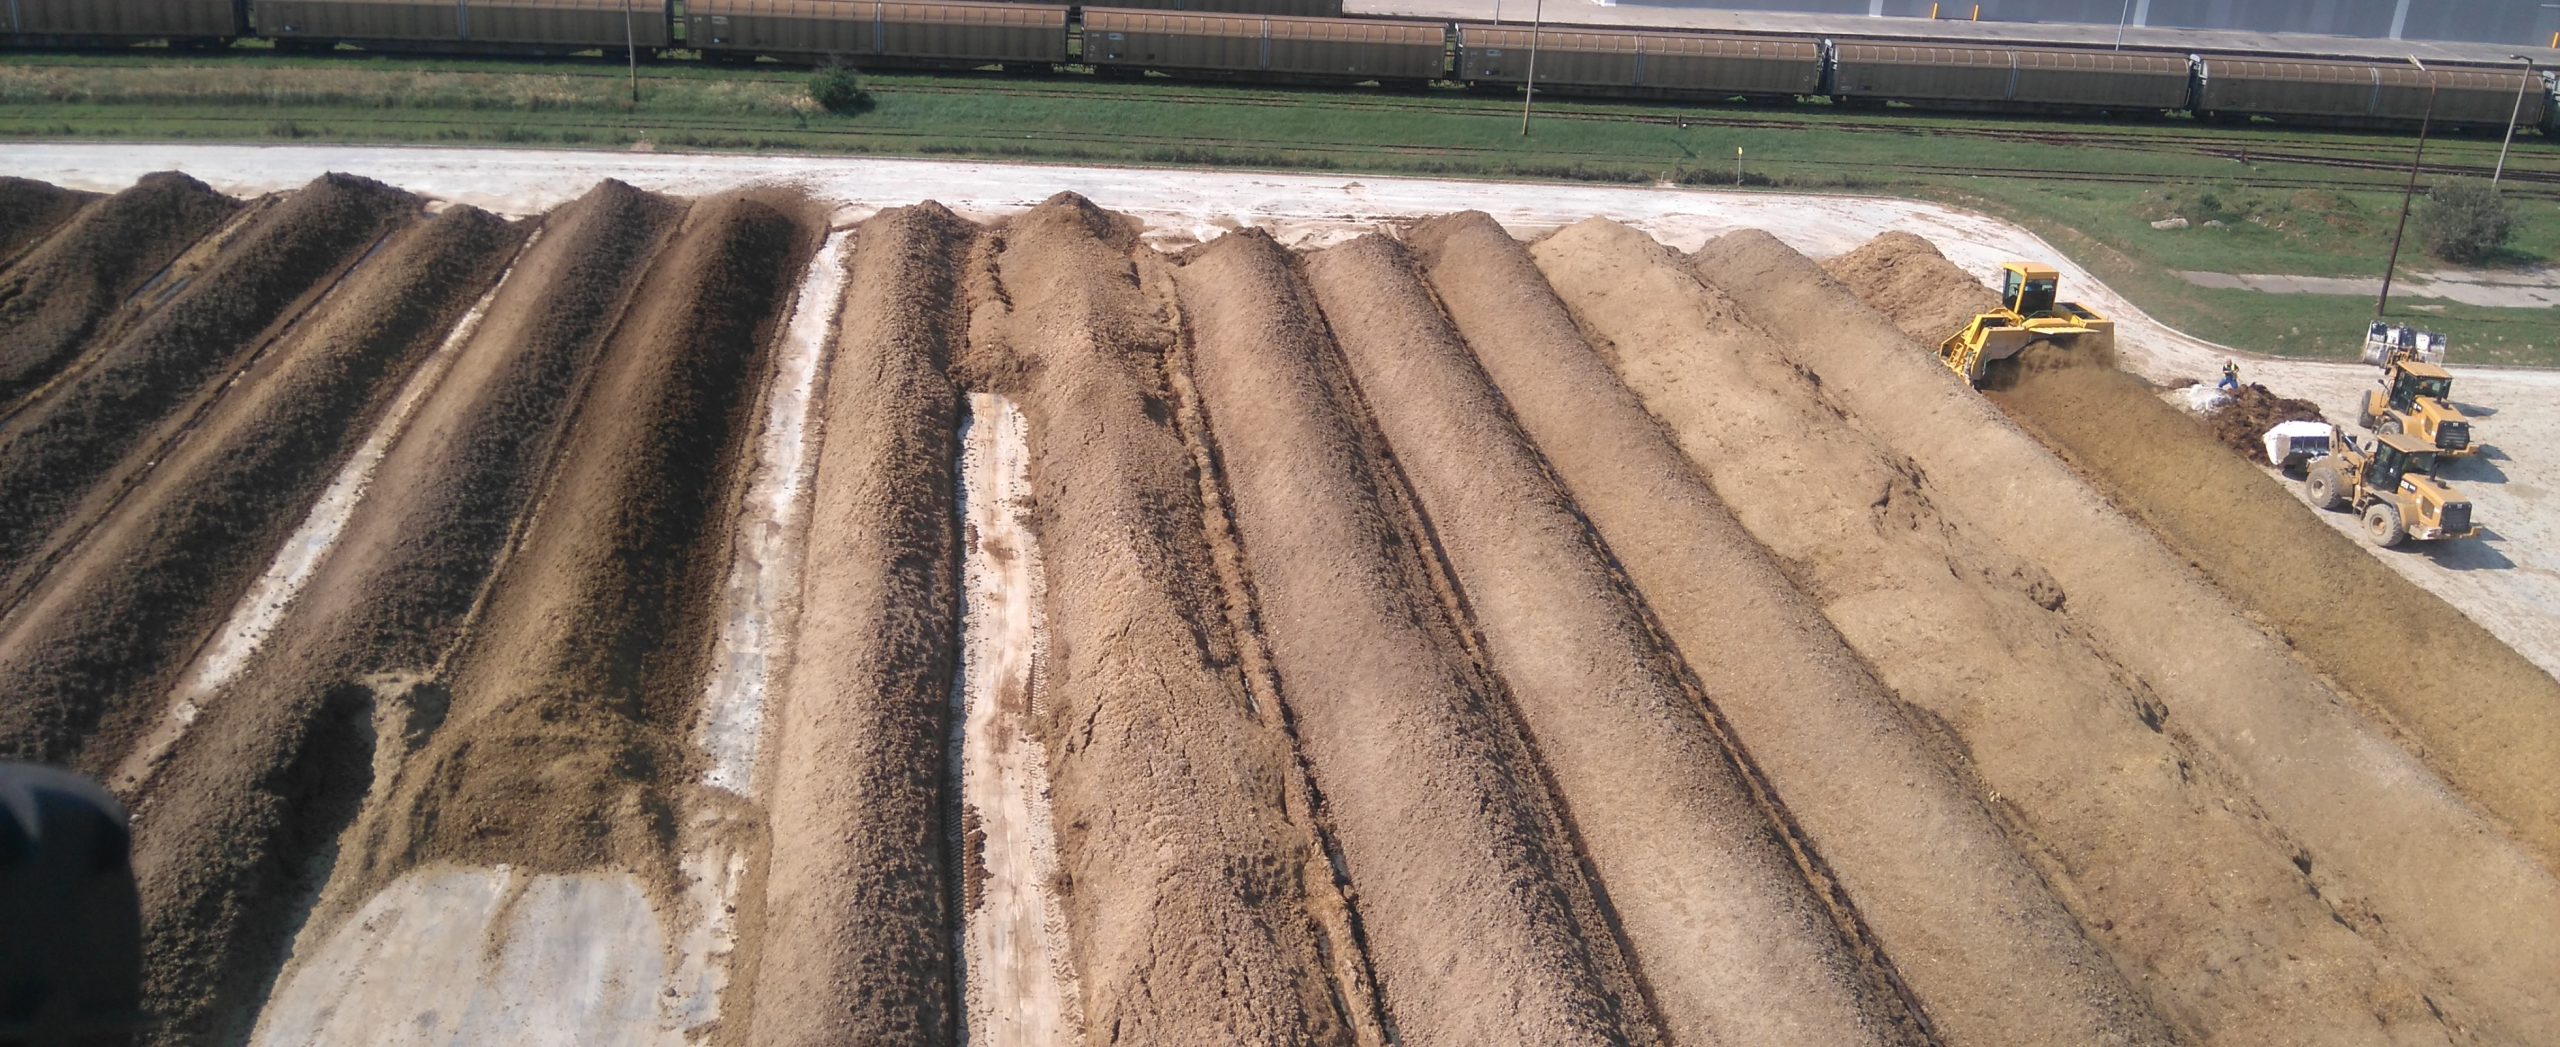 Komposzt és cellulózgyári mésziszap talajjavításhoz